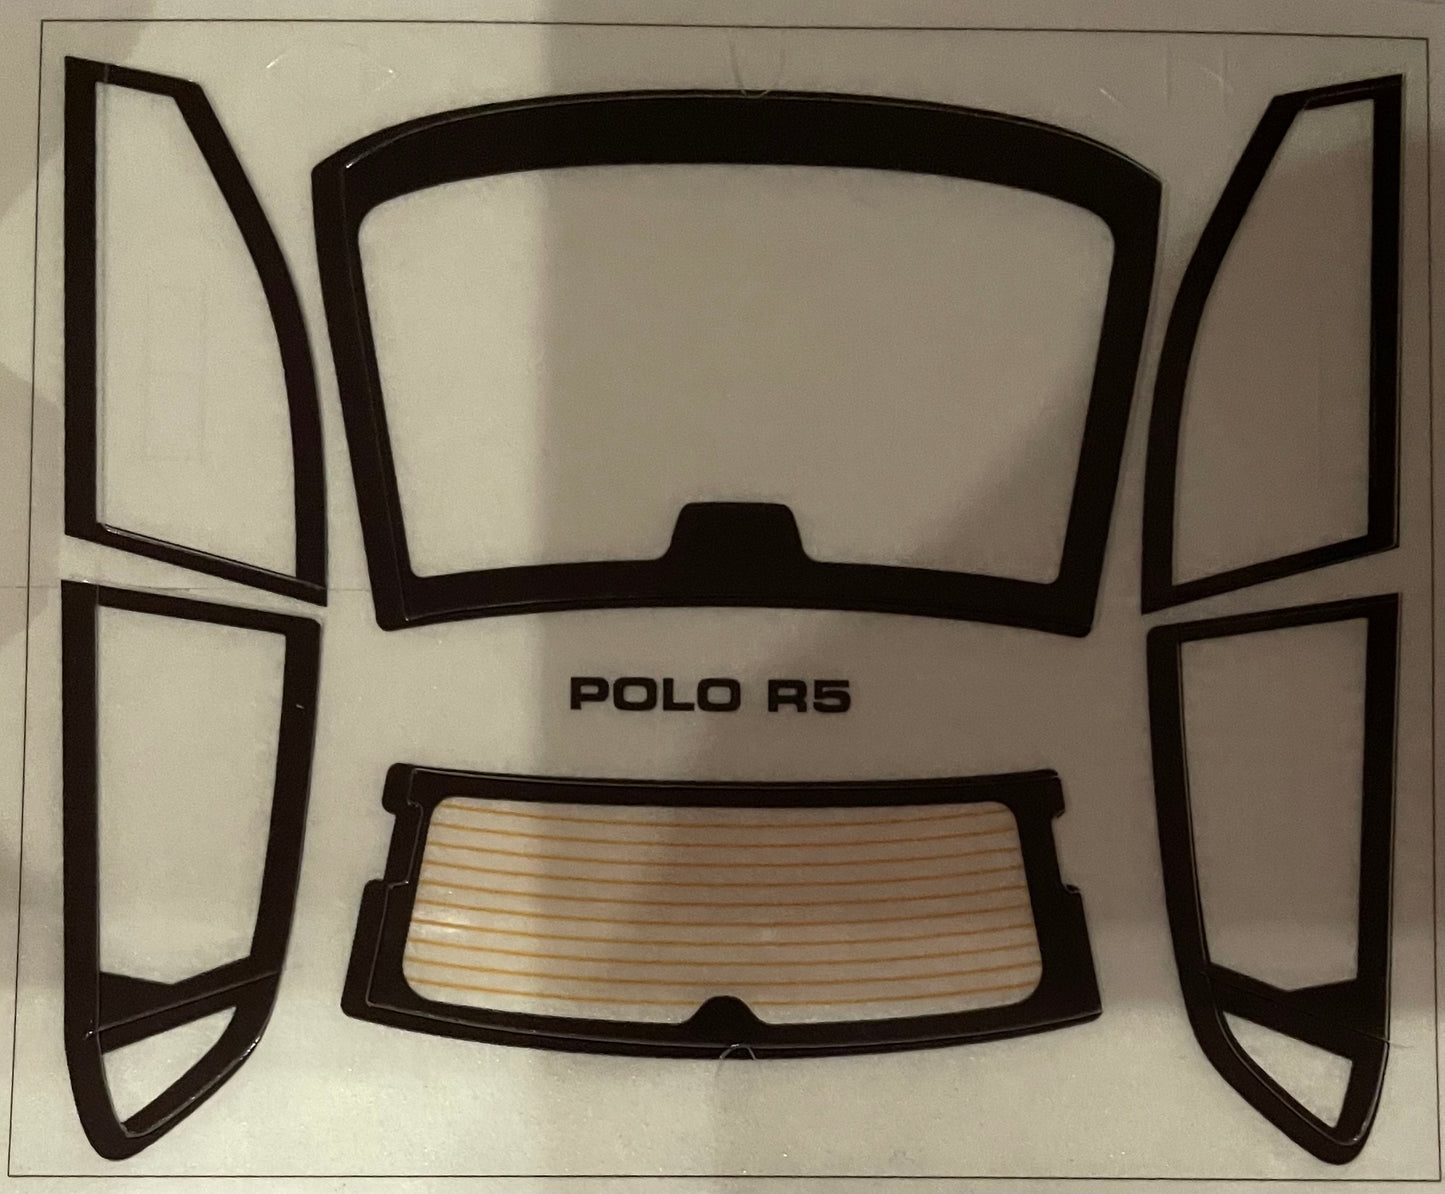 VOLKSWAGEN POLO GTi  R5 RALLY CAR  - MODEL KIT